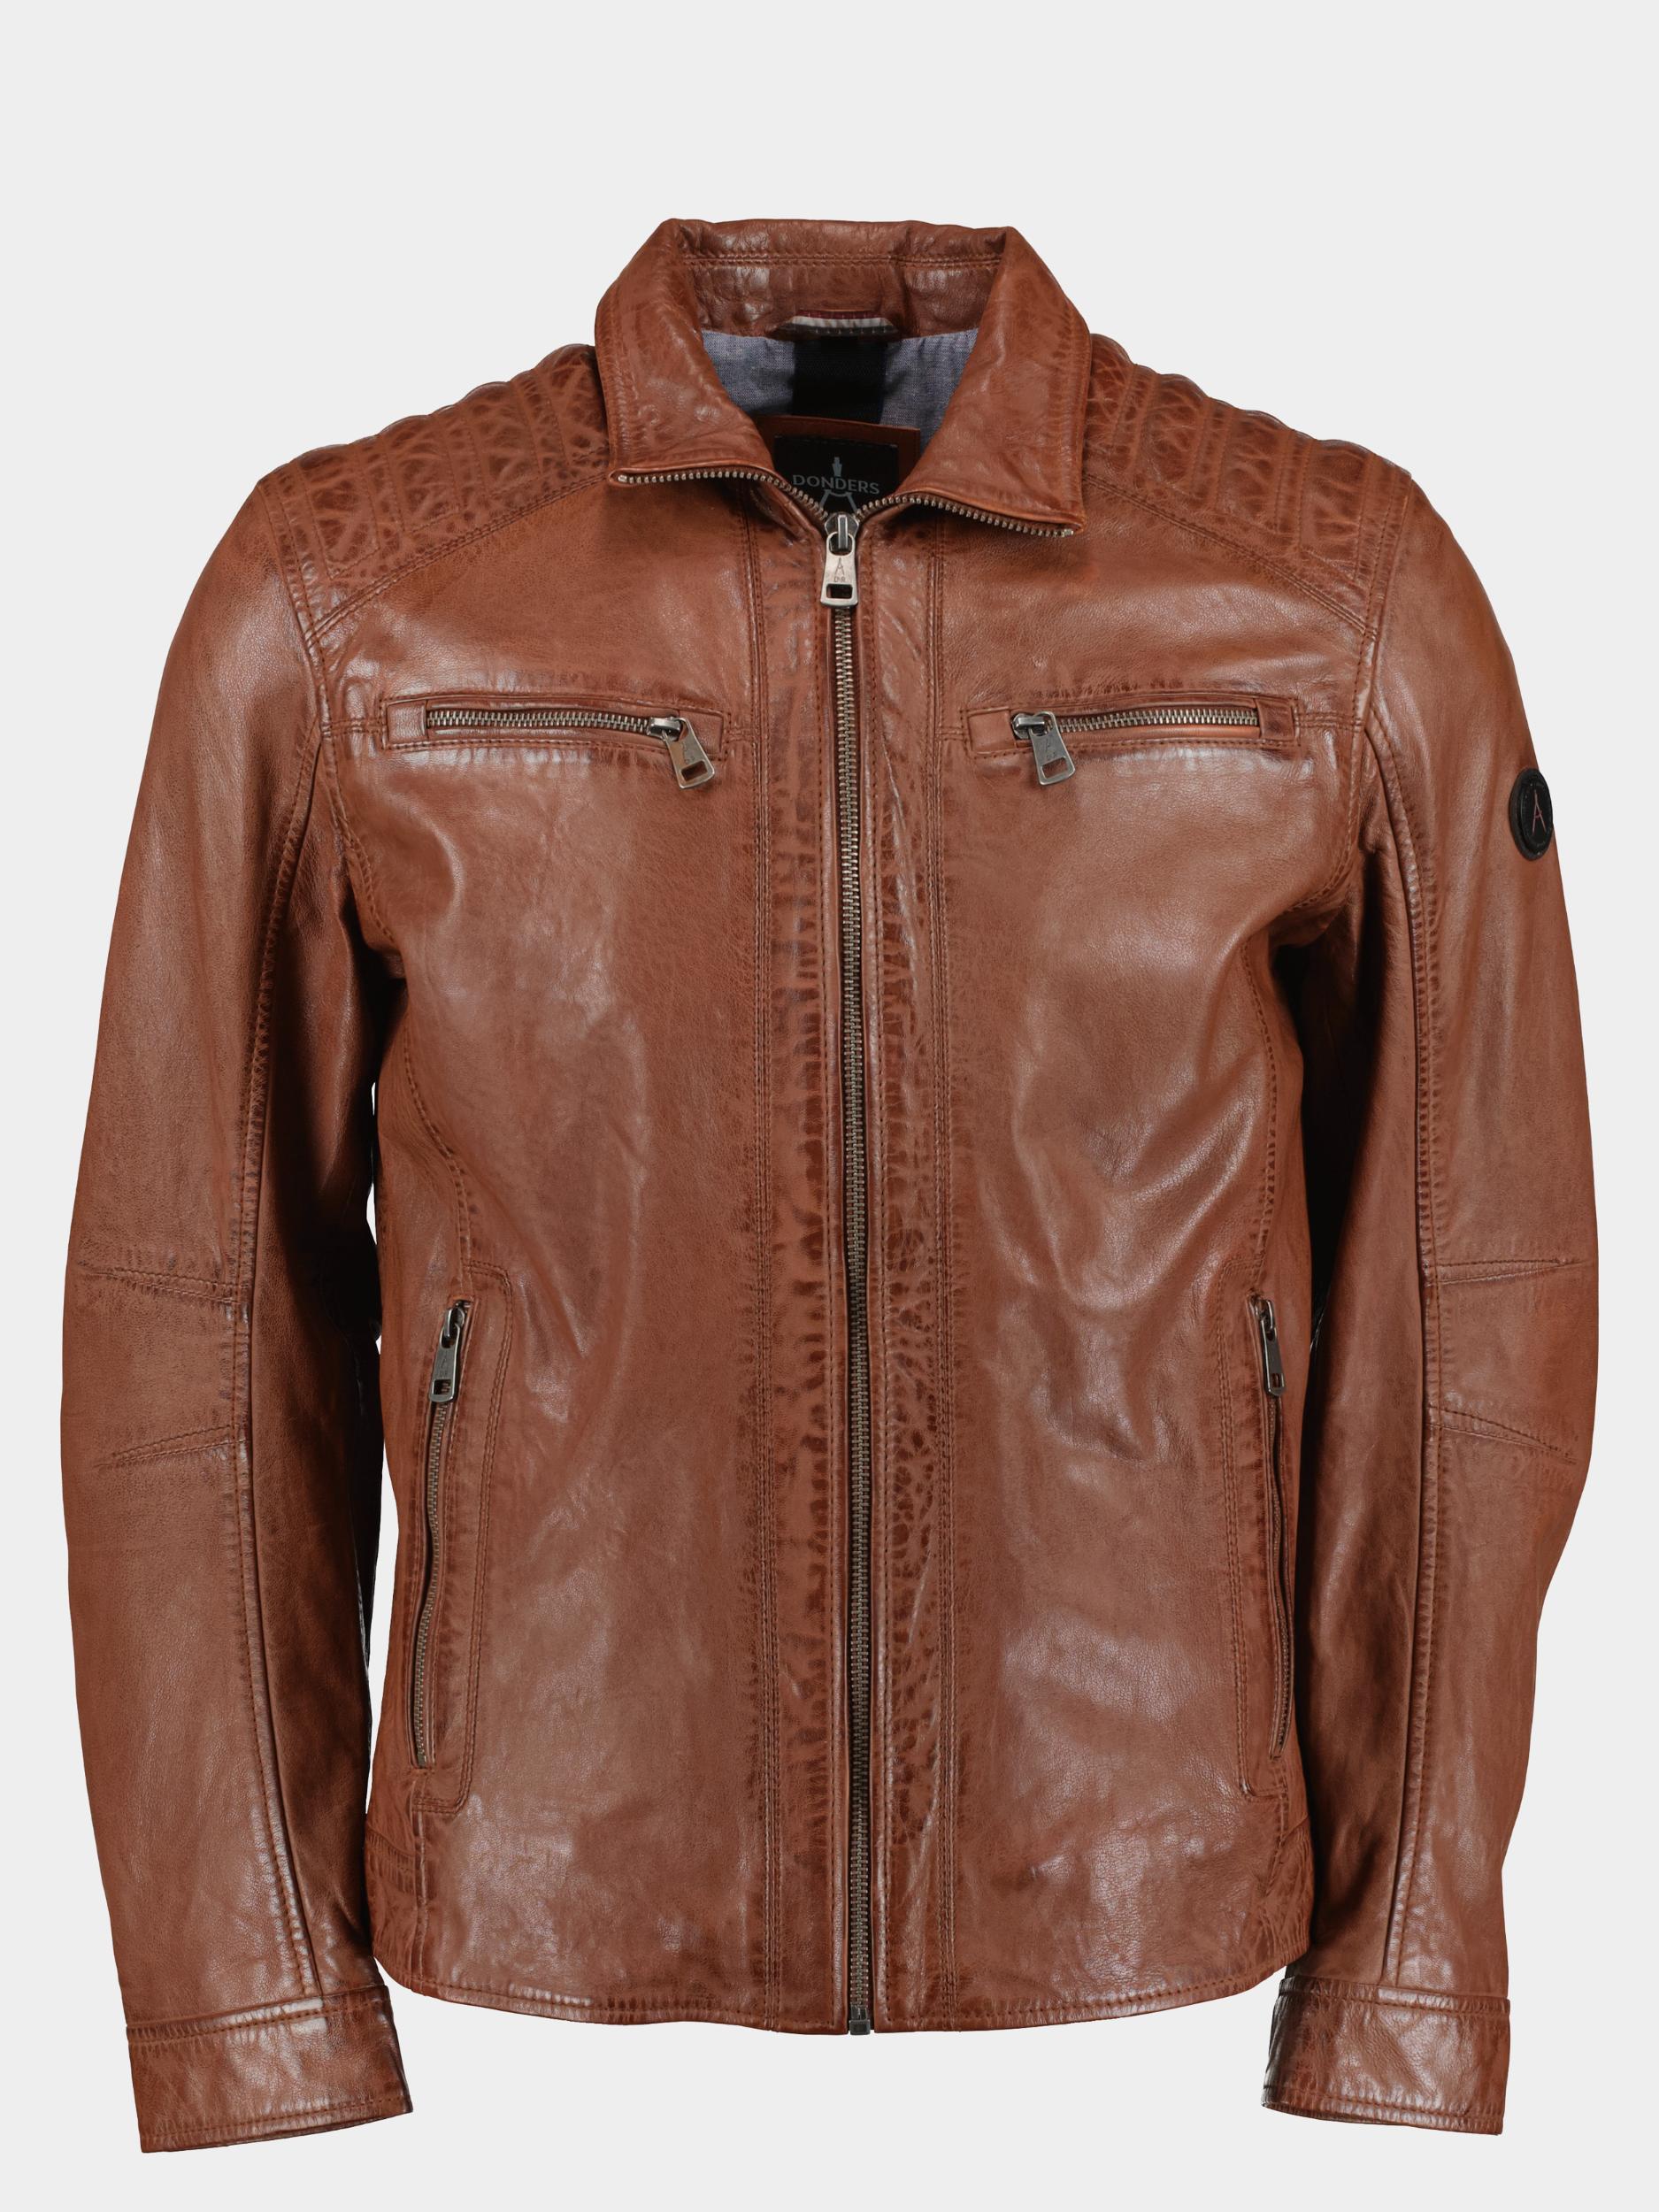 Donders 1860 Lederen jack Bruin Leather Jacket 52347/451